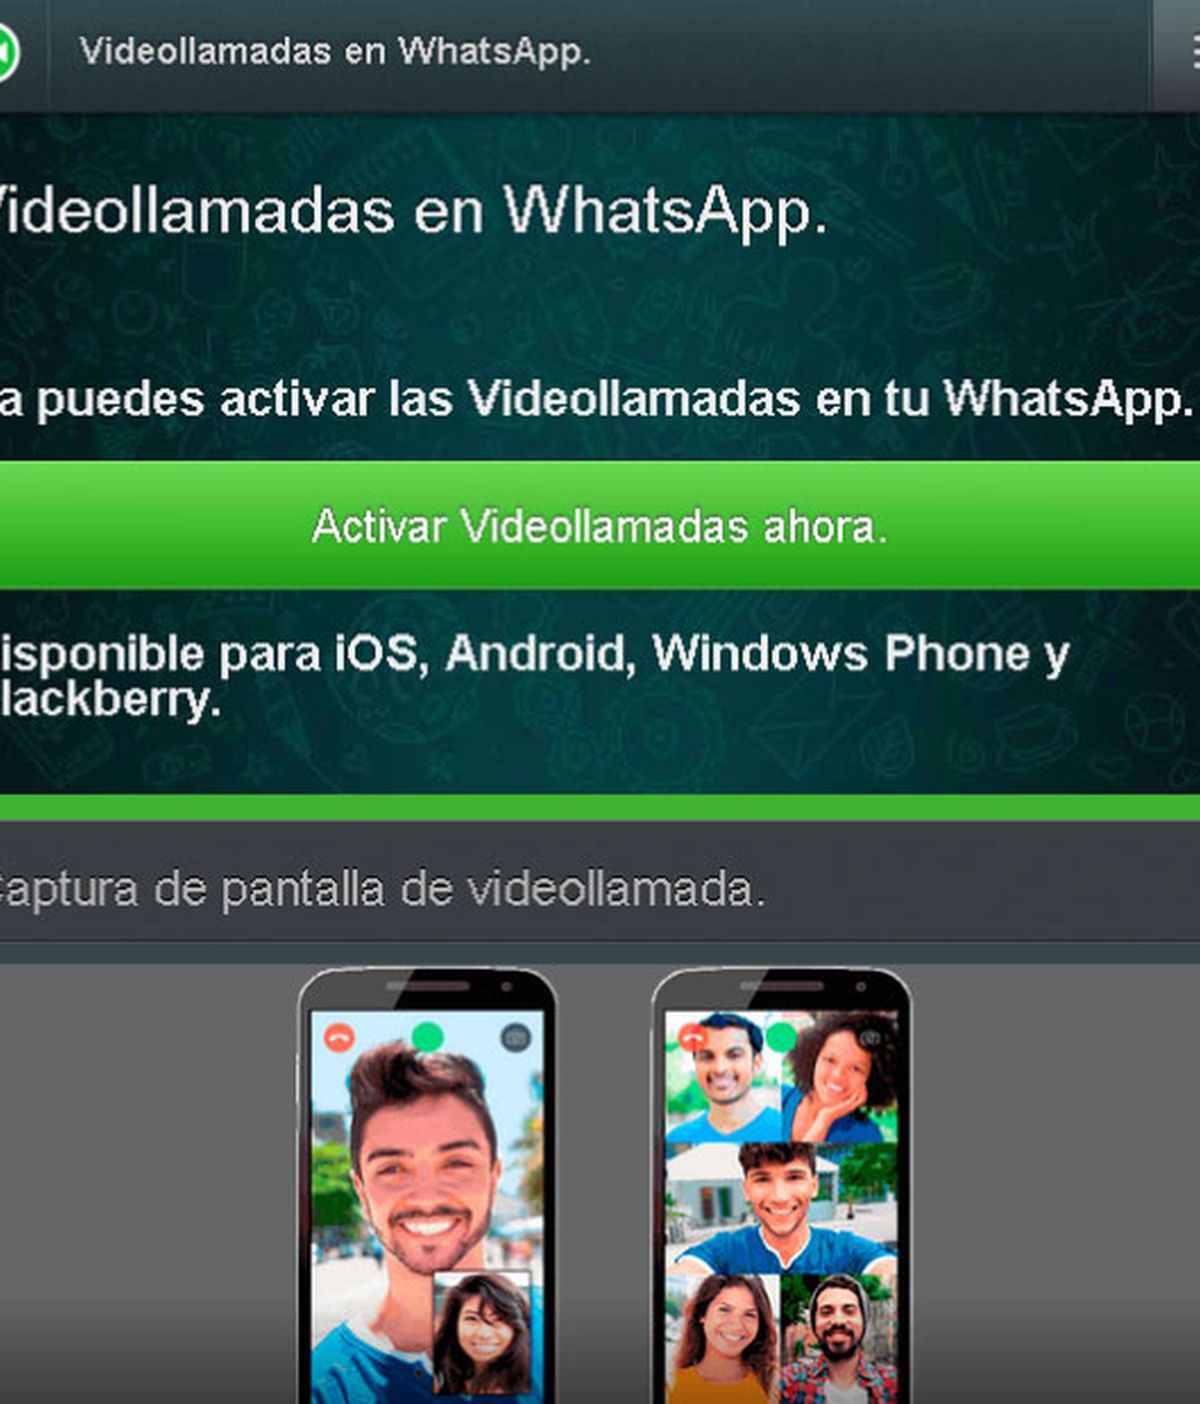 servicio de videollamadas WhatsApp, WhatsApp